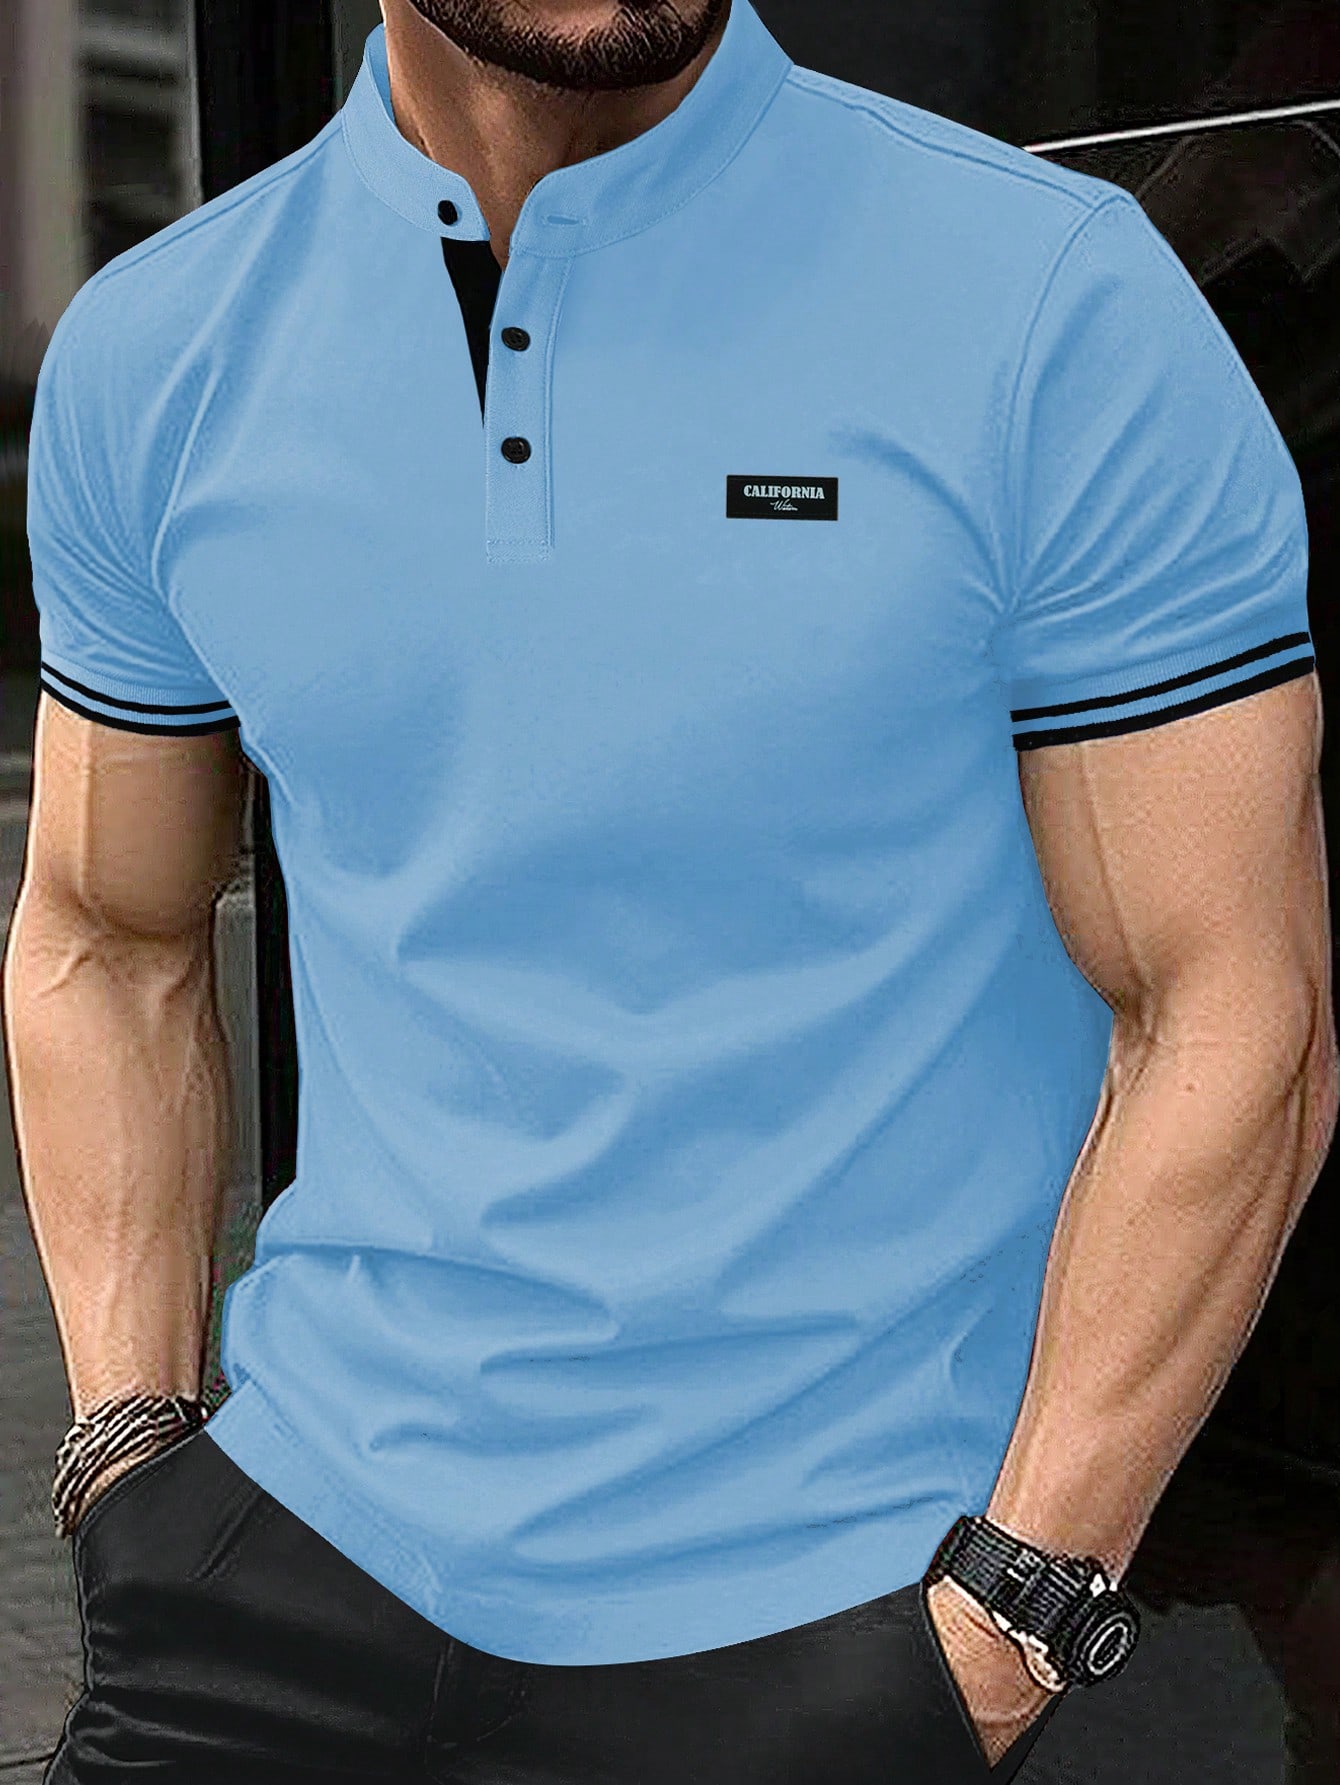 Мужская рубашка-поло с коротким рукавом и планкой на пуговицах Manfinity Homme, синий мужская рубашка поло контрастного цвета manfinity homme черный